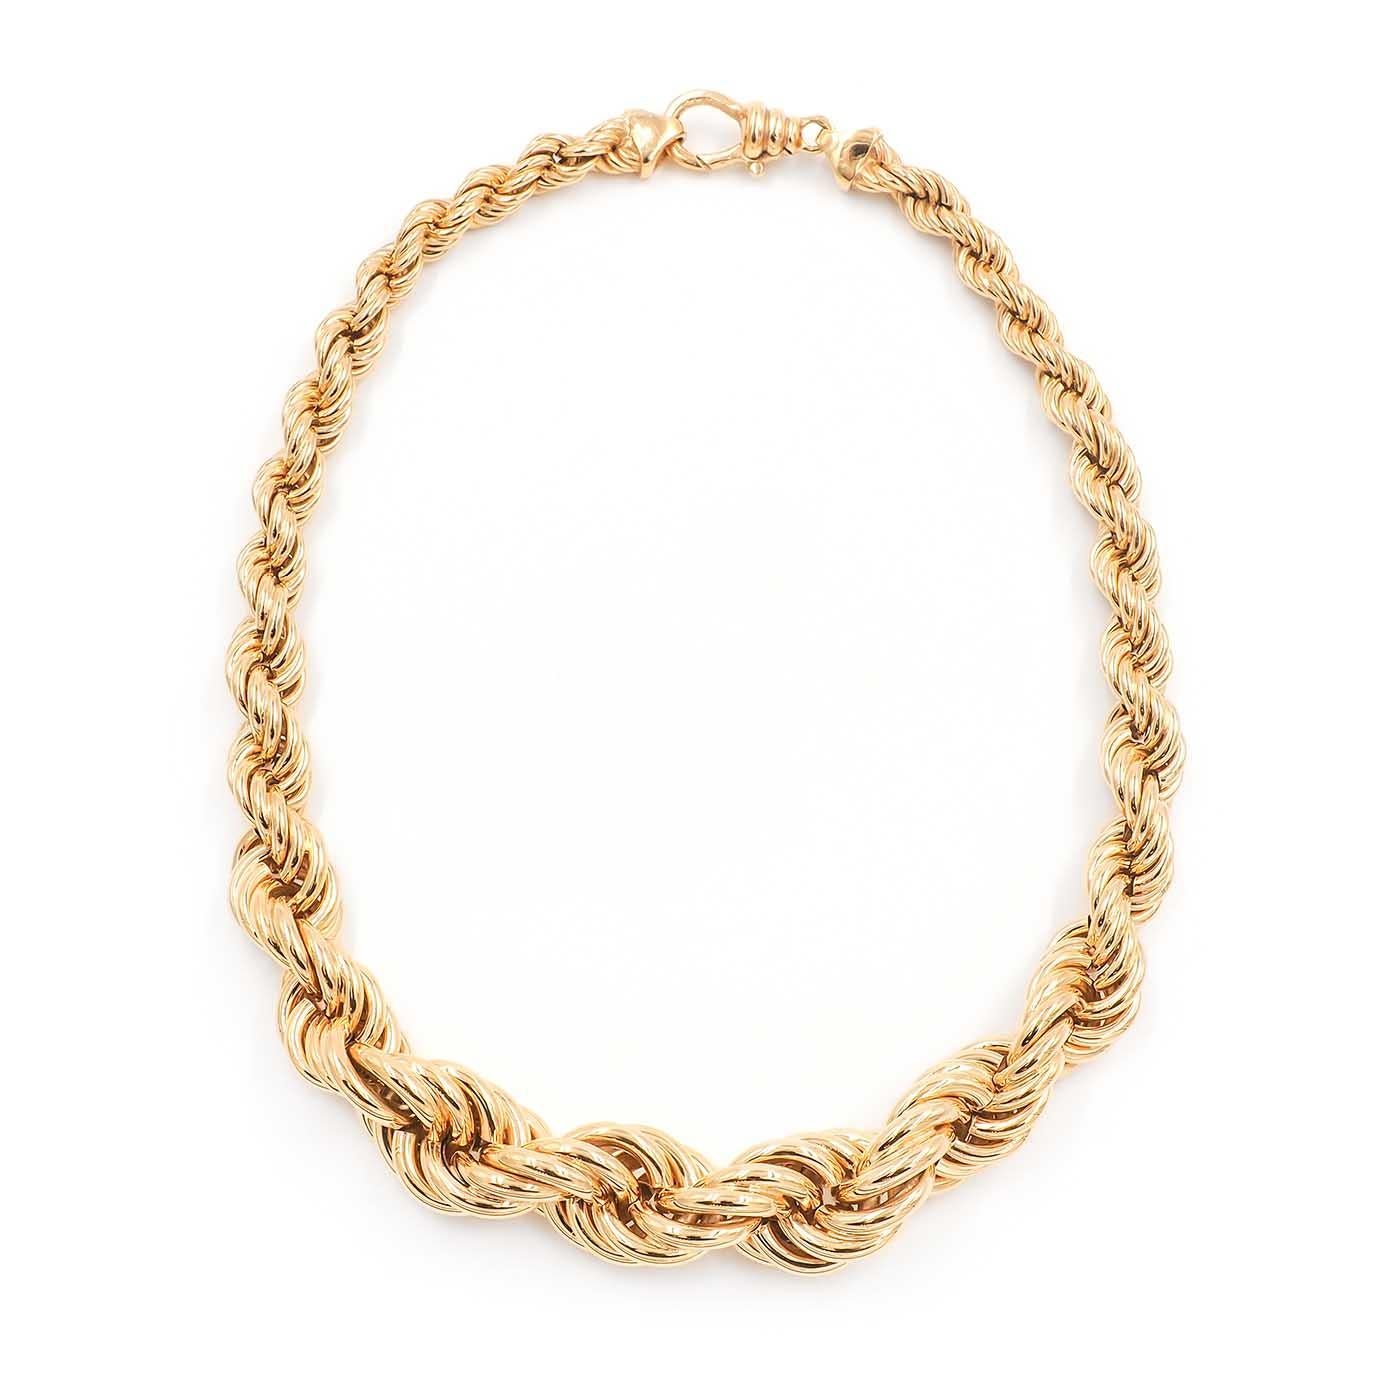 Vintage Graduated Twisted Rope Link Goldkette Halskette von 18k gelb zusammen. Mit einem gedrehten Seilglied, das vorne breiter und hinten dünner ist; misst vorne ca. 16,5 mm und hinten 8 mm breit. Die Halskette ist 16,75